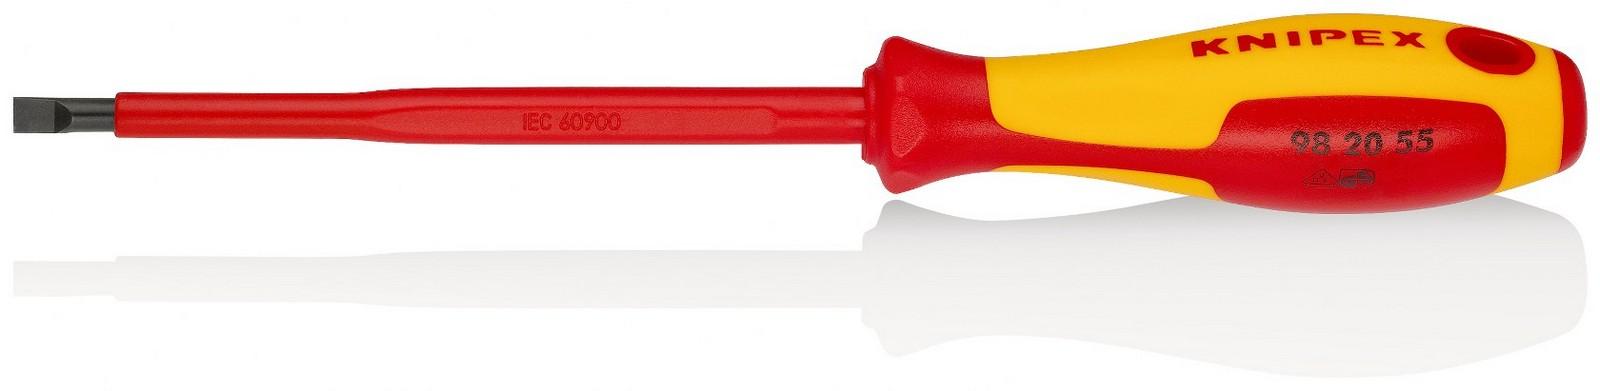 KNIPEX Odvijač ravni 1000V VDE 5.5mm 98 20 55 crveno-žuti